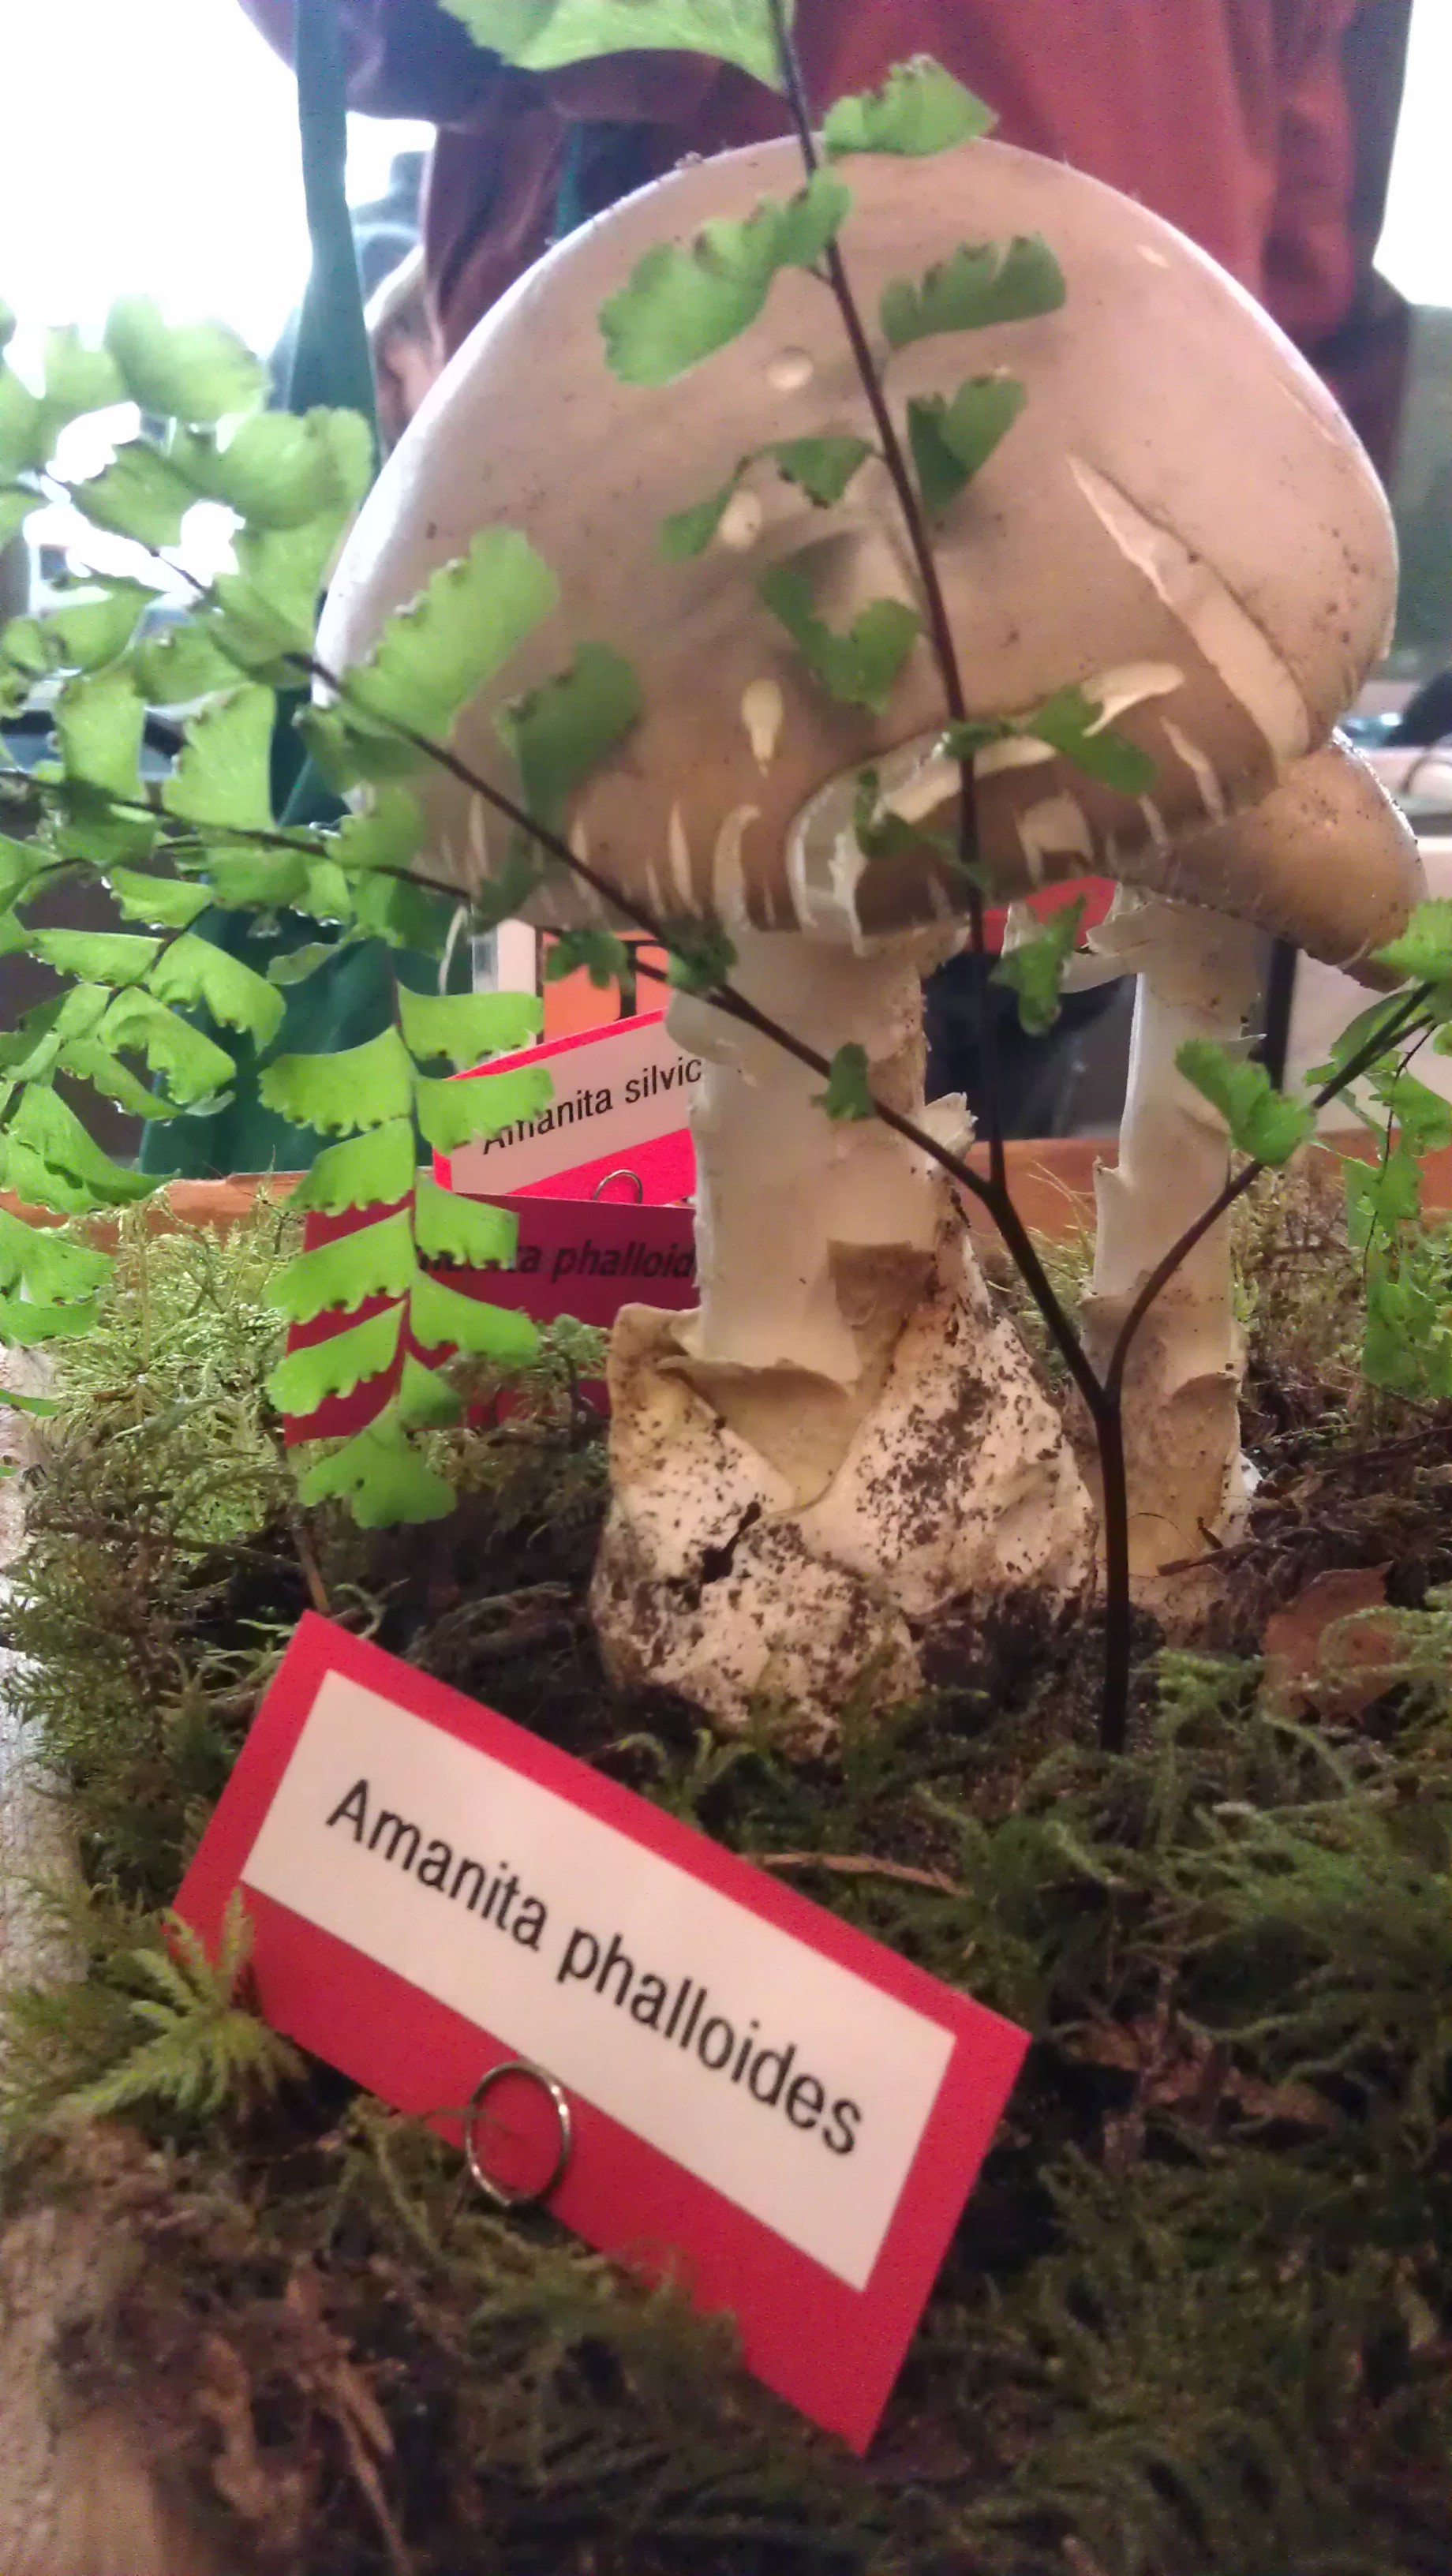 Amanita phalloides (The Death Cap)